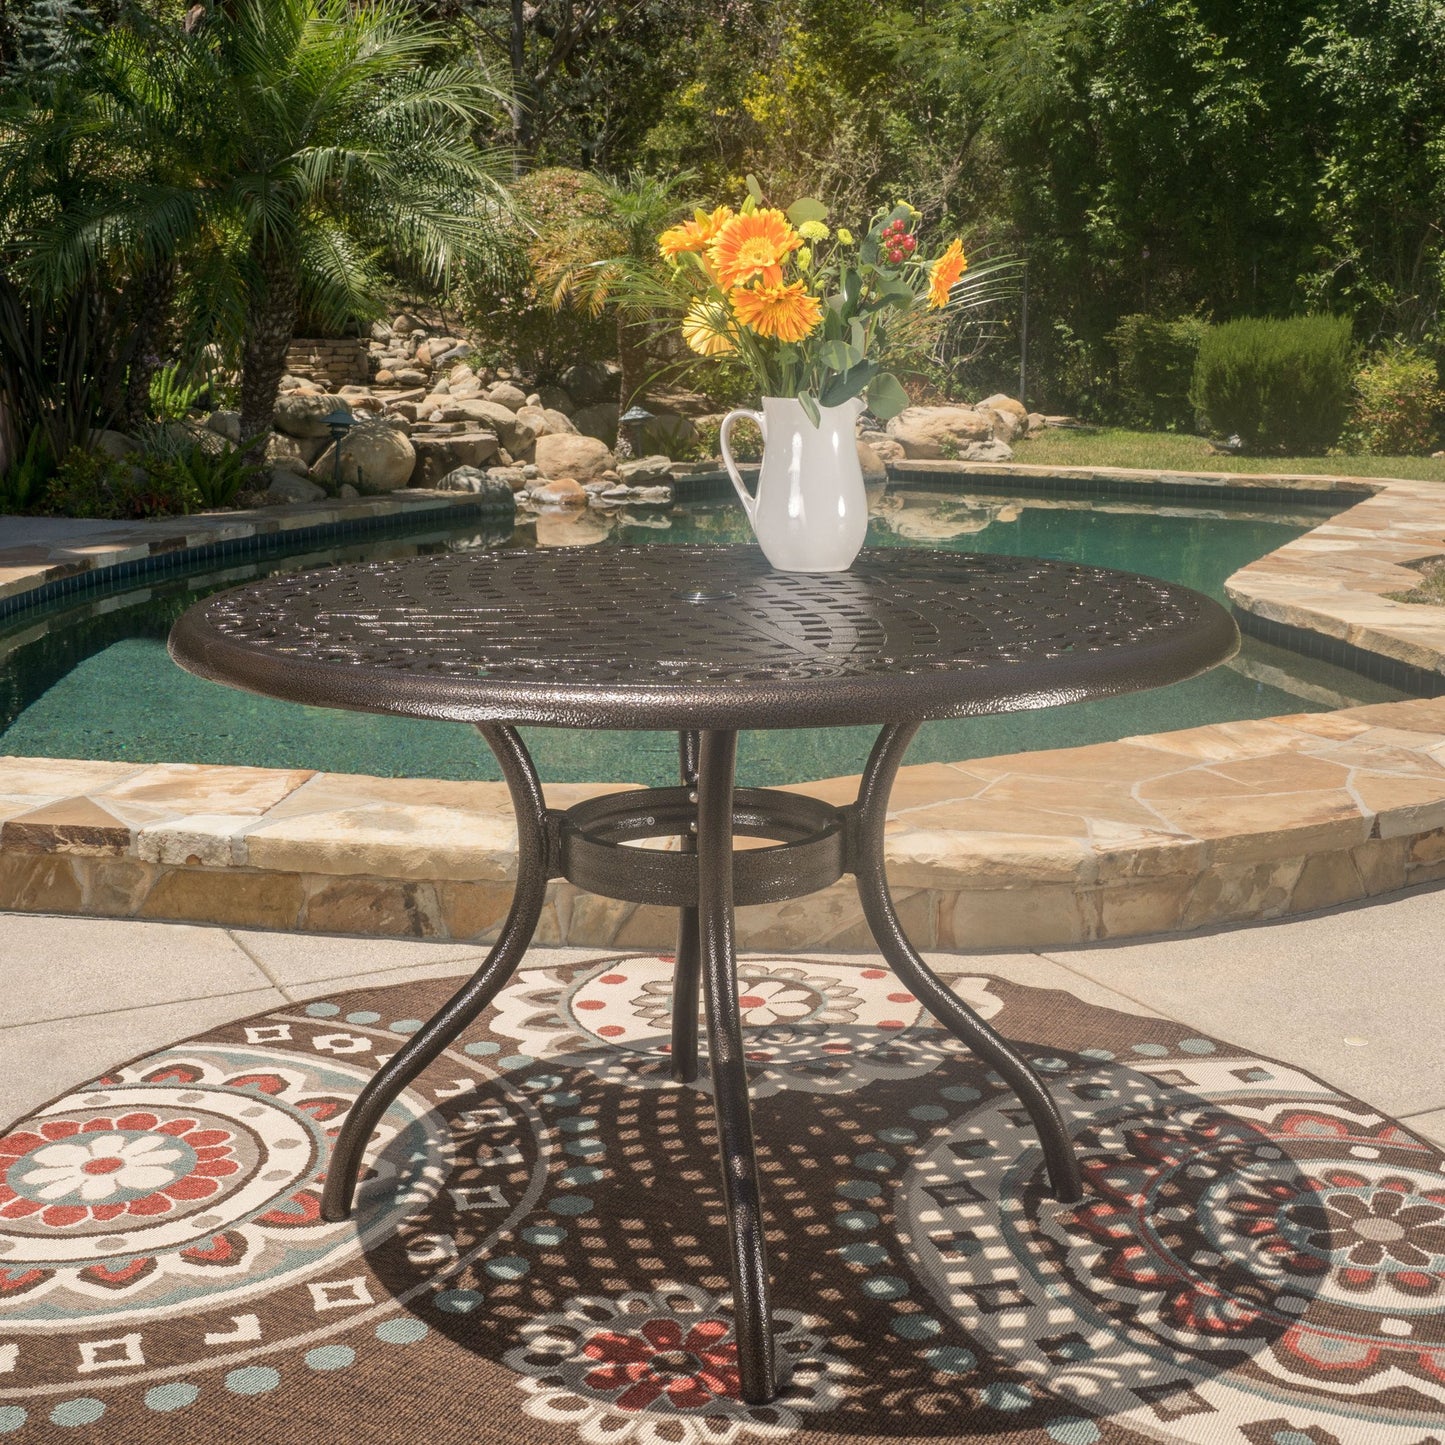 Kiawah Outdoor Circular Bronze Cast Aluminum Dining Table with Umbrella Hole